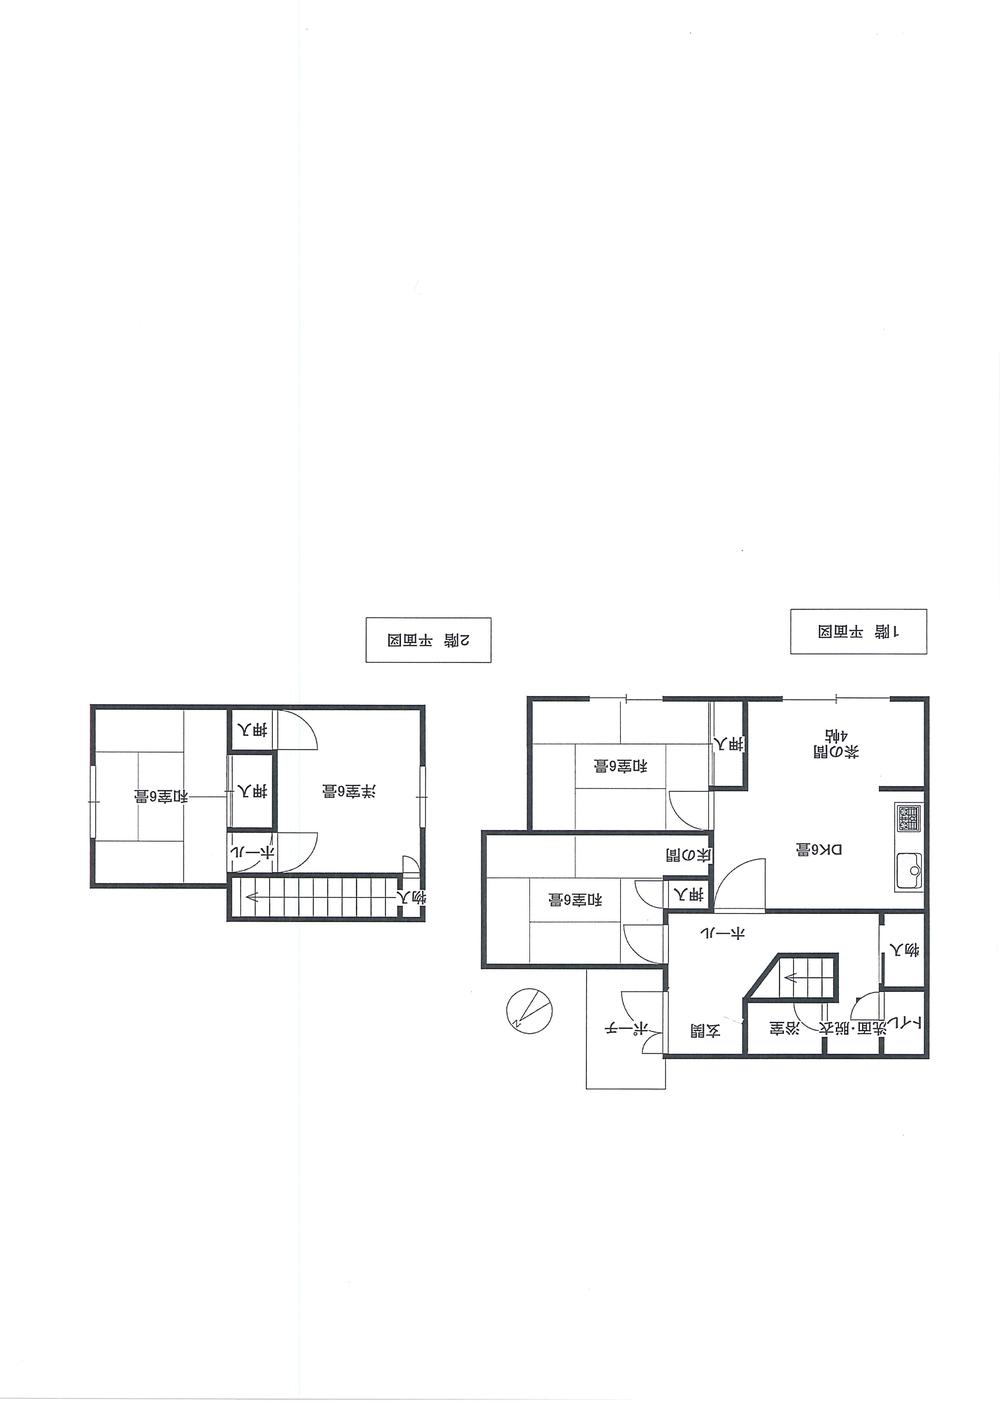 Floor plan. 8.9 million yen, 4DK, Land area 246.63 sq m , Building area 77.83 sq m